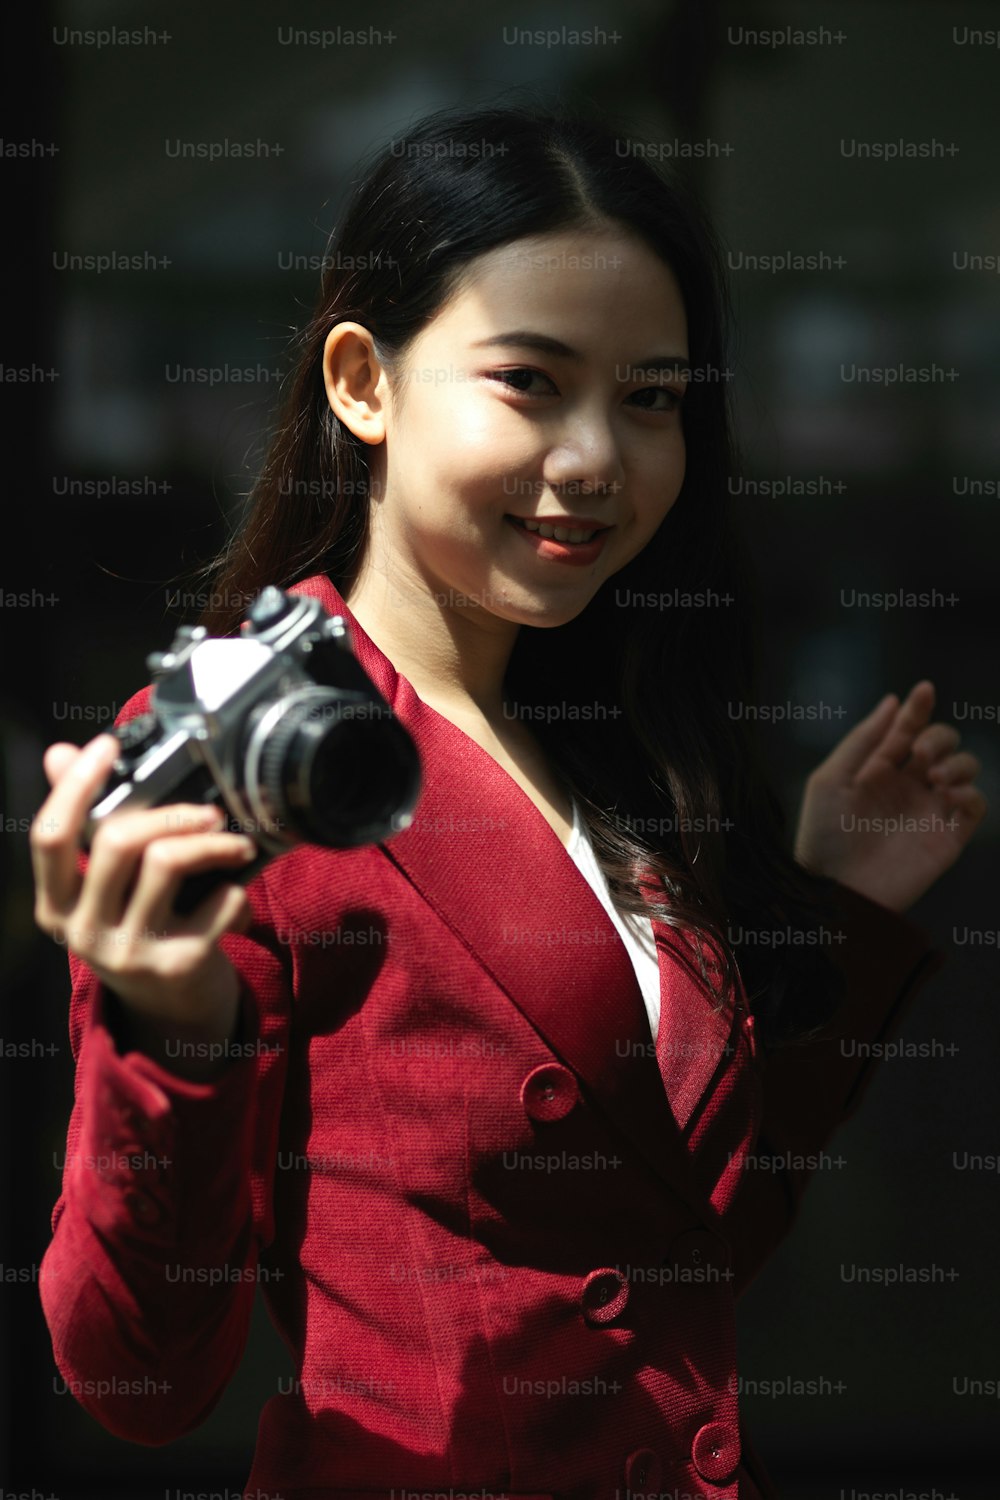 Retrato de una atractiva fotógrafa joven con traje rojo sosteniendo una cámara retro o vintage.